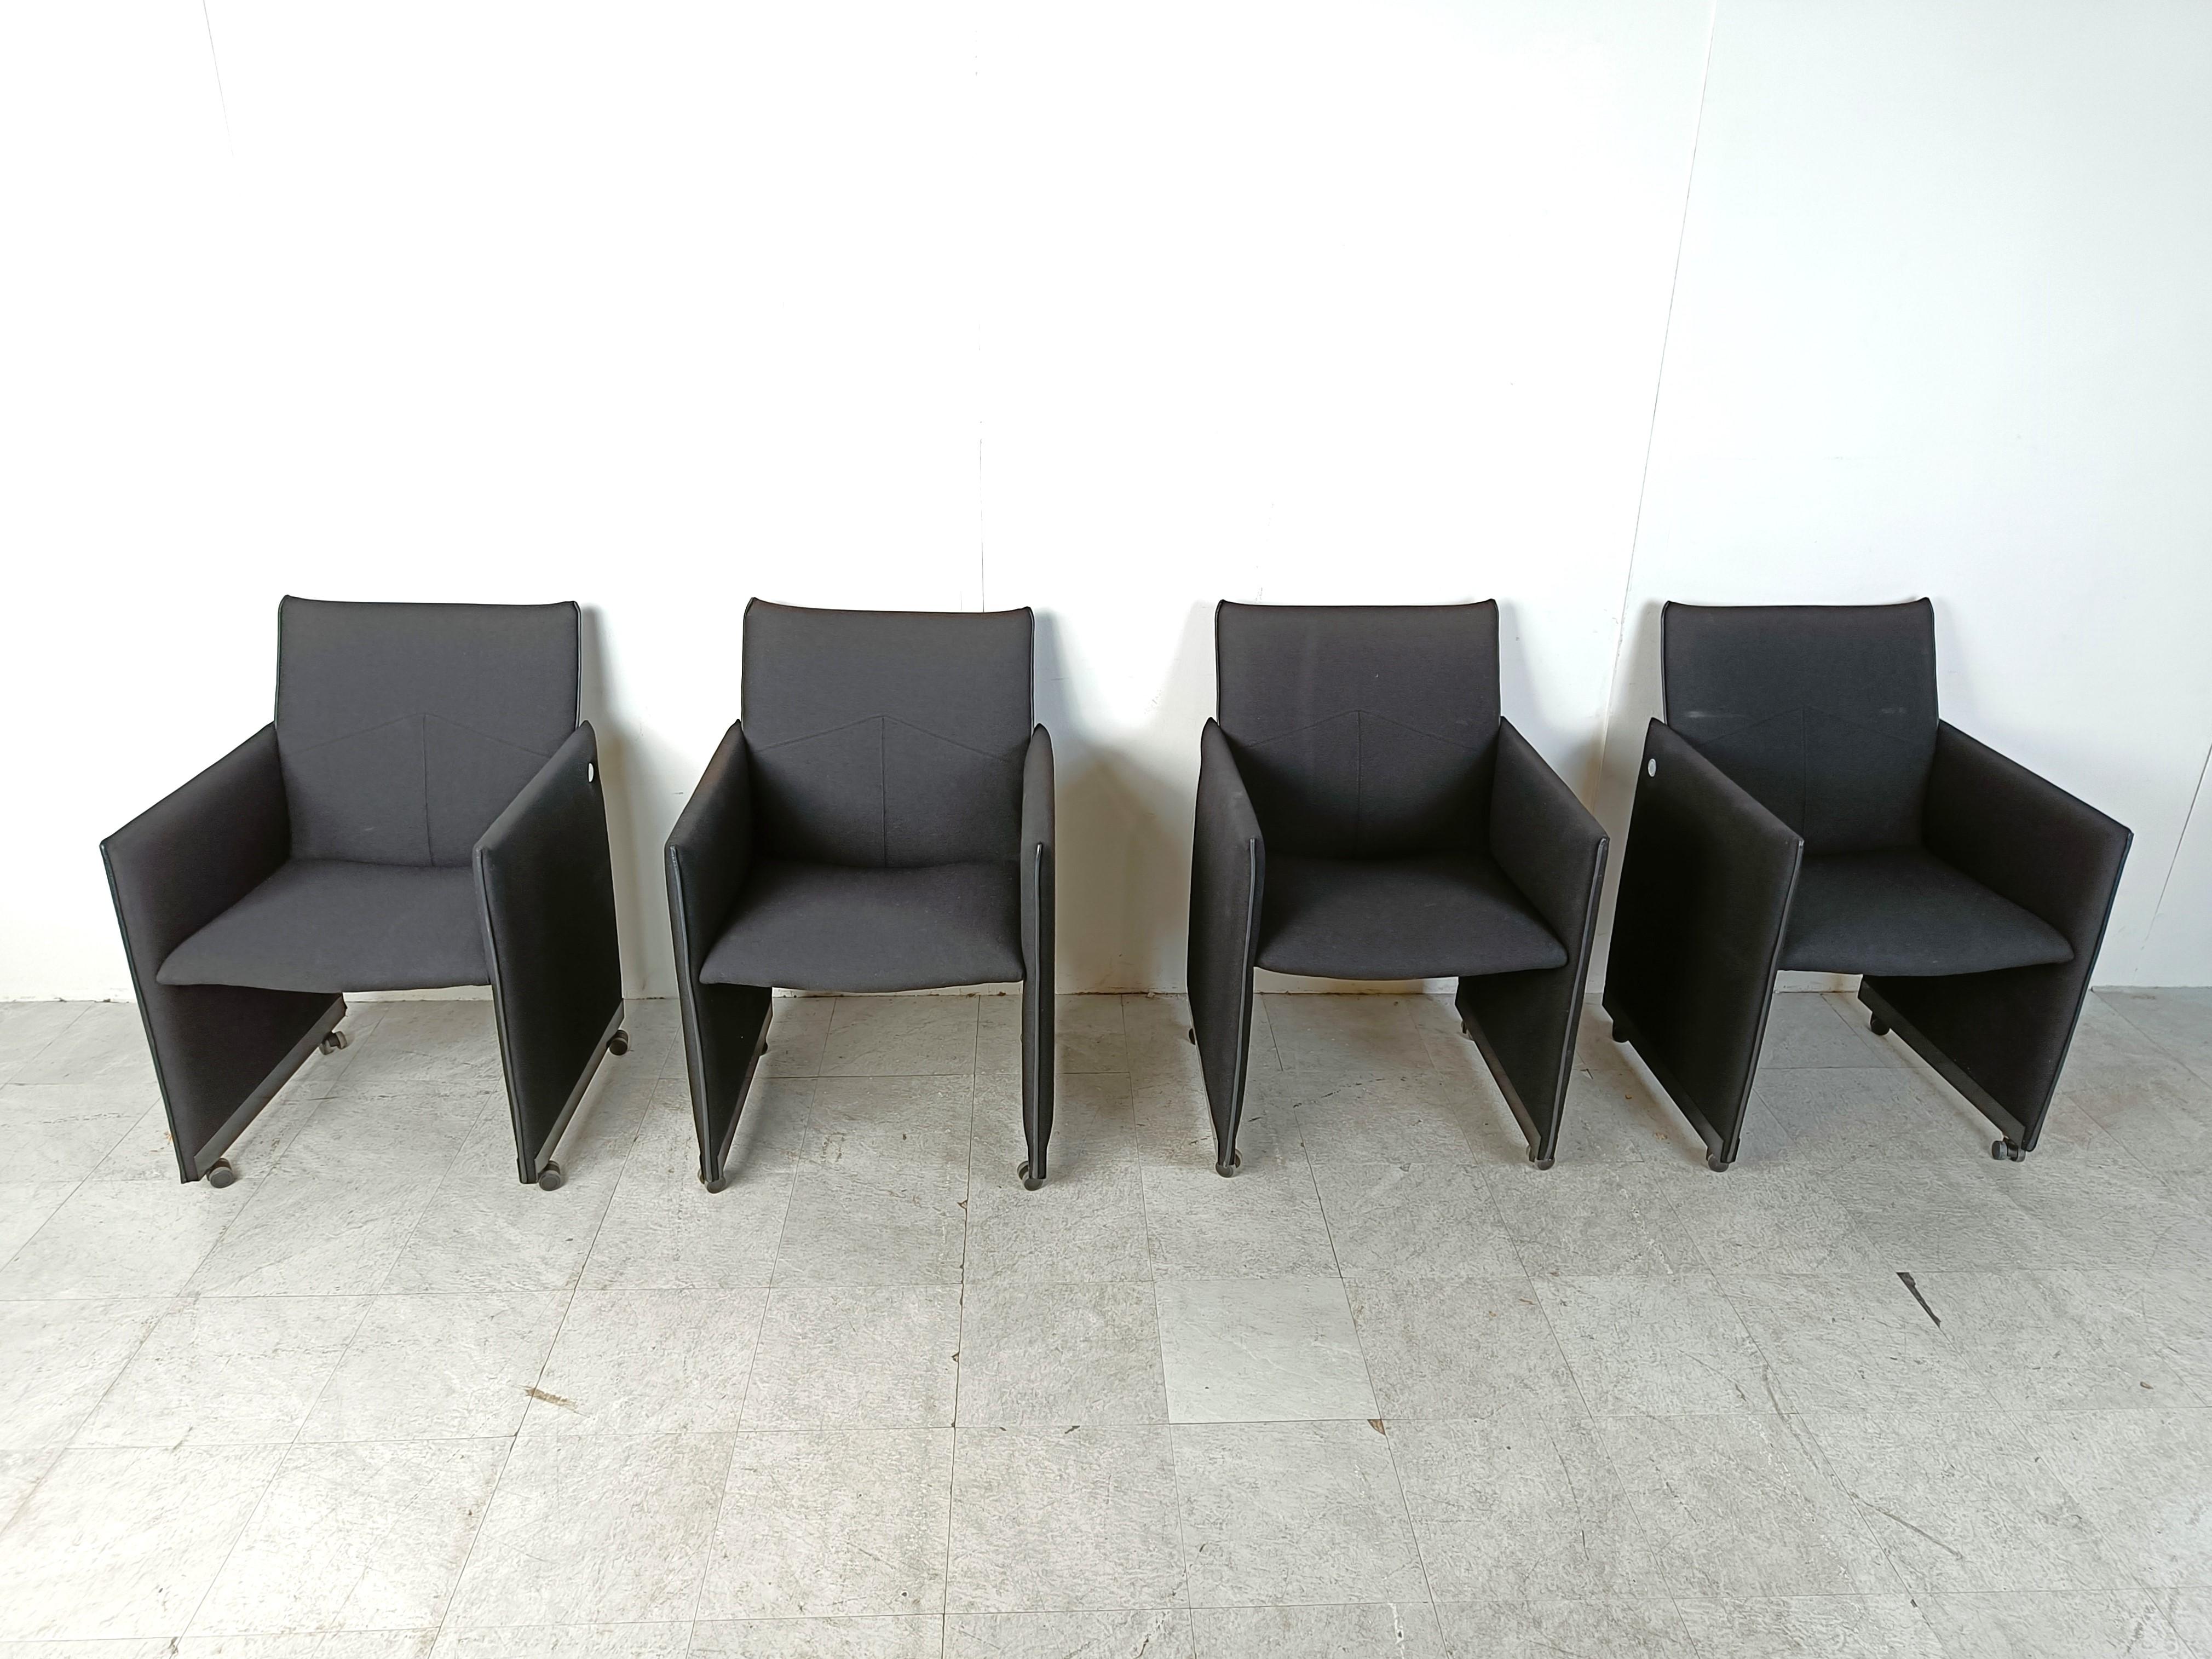 Satz von 4 schwarzen Stoffsesseln auf Rollen, entworfen von Geoffrey Harcourt für Artifort.

Die Stühle sind an der Seite mit einem runden Metallschild und unter den Sitzen gekennzeichnet.

Dank der praktischen Rollen lassen sich die Stühle leicht